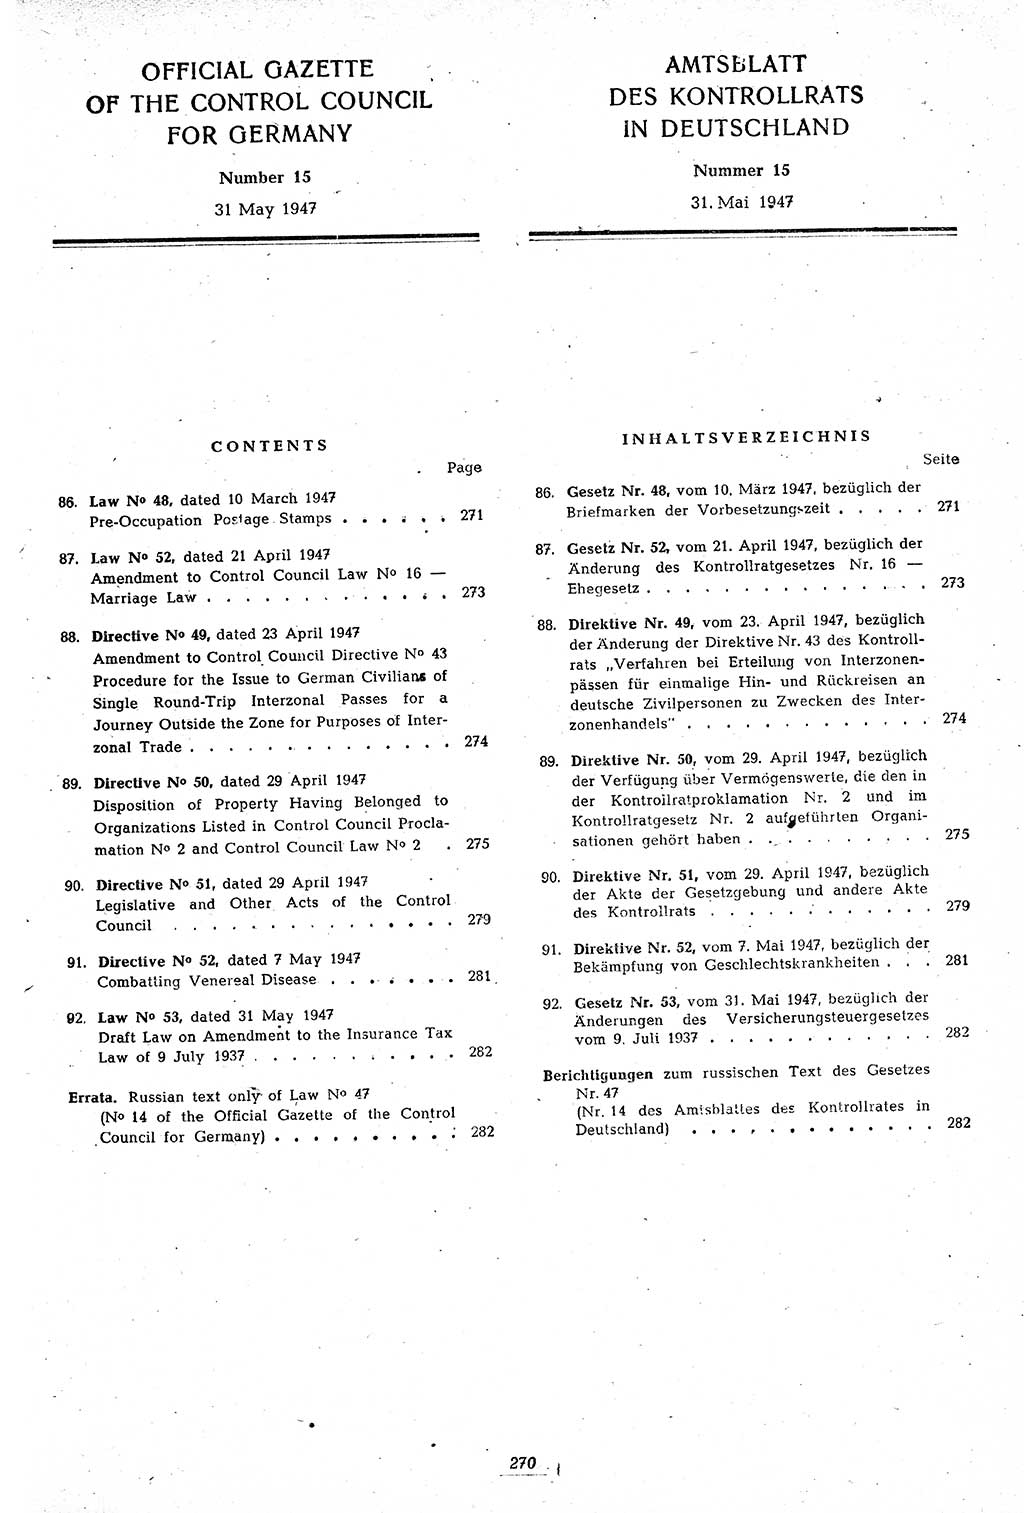 Amtsblatt des Kontrollrats (ABlKR) in Deutschland 1947, Seite 270/2 (ABlKR Dtl. 1947, S. 270/2)